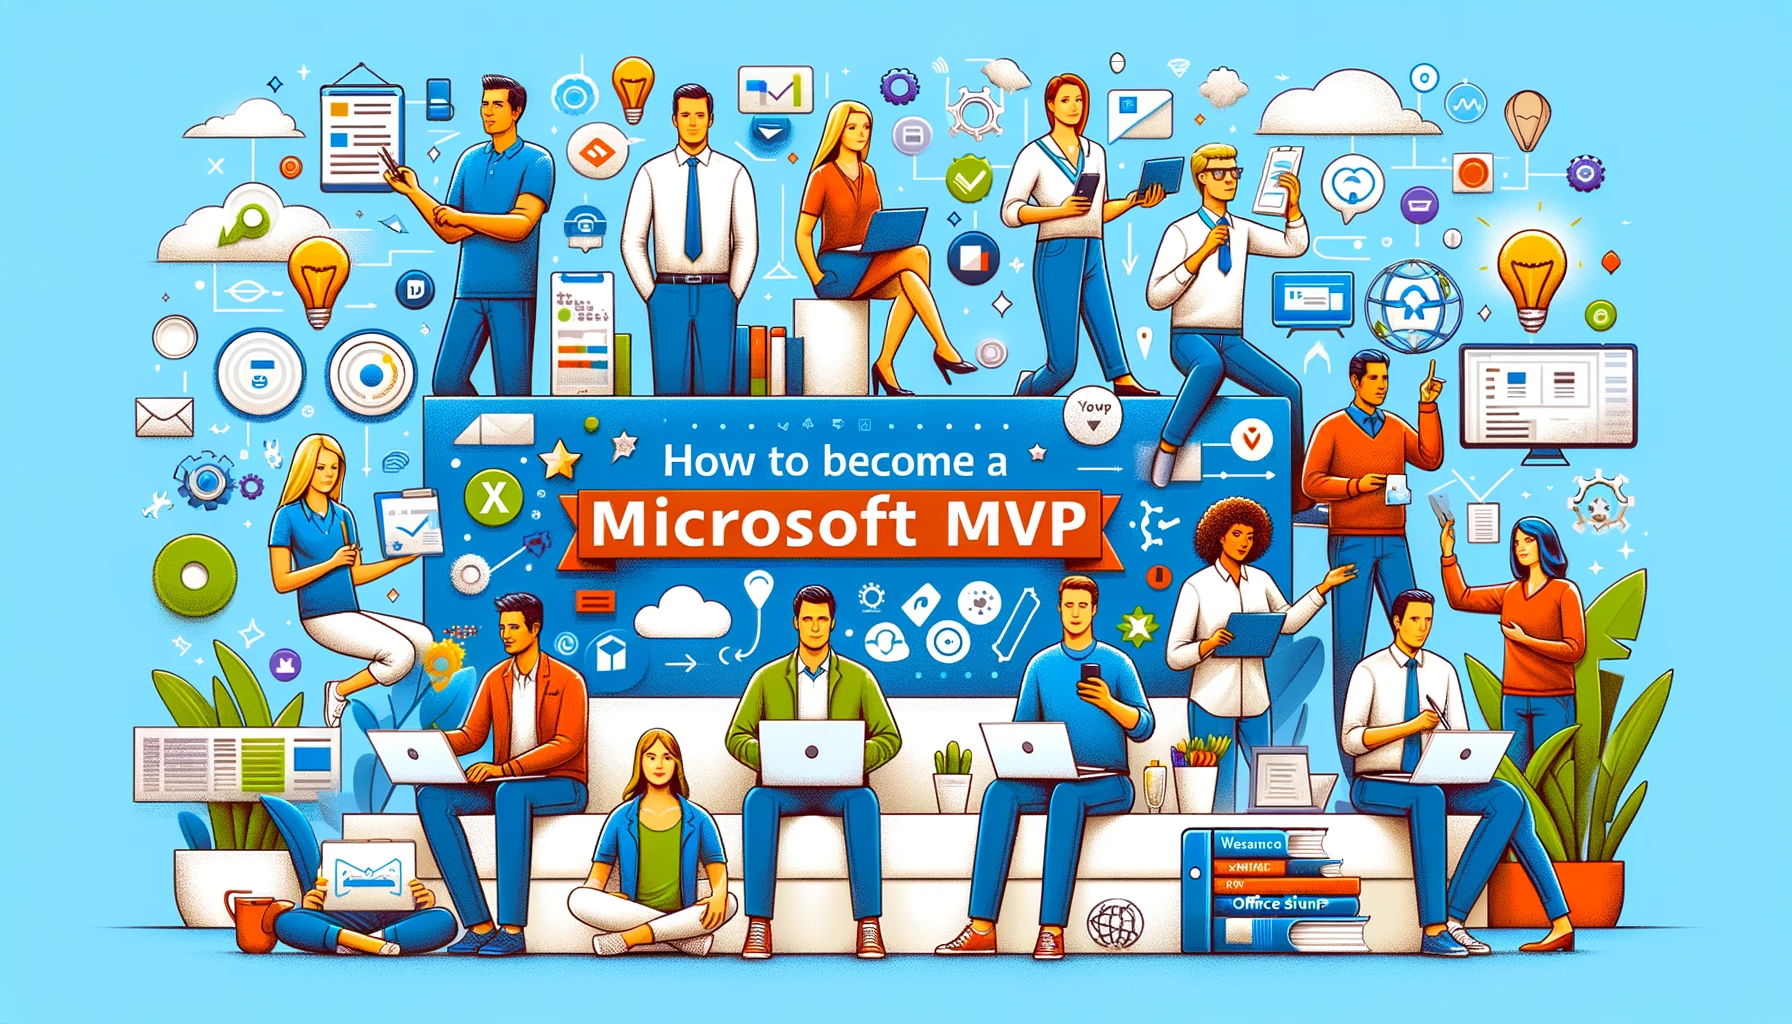 Microsoft MVP program